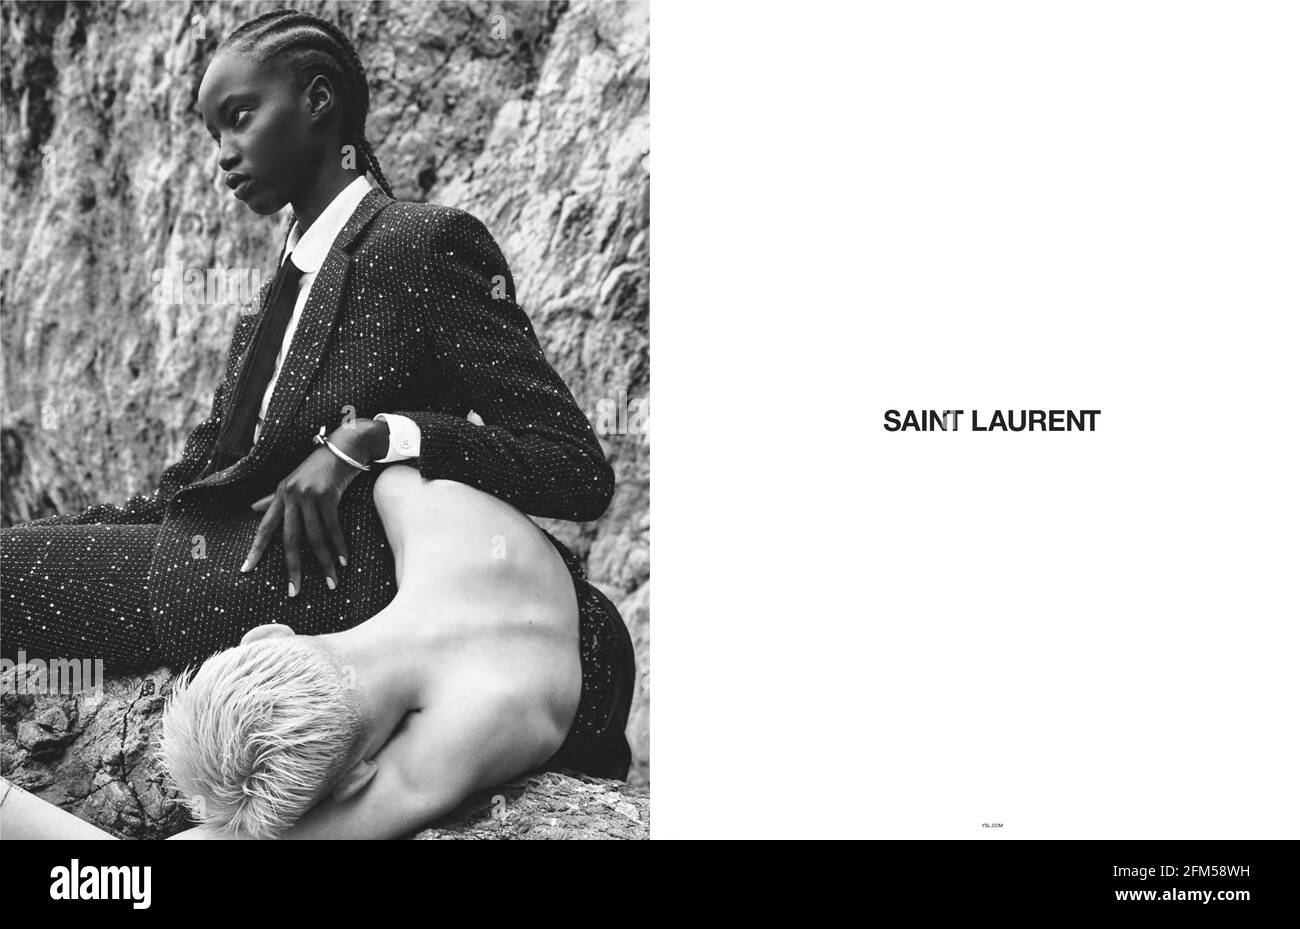 2010S UK Saint Laurent Magazine annuncio pubblicitario Foto Stock